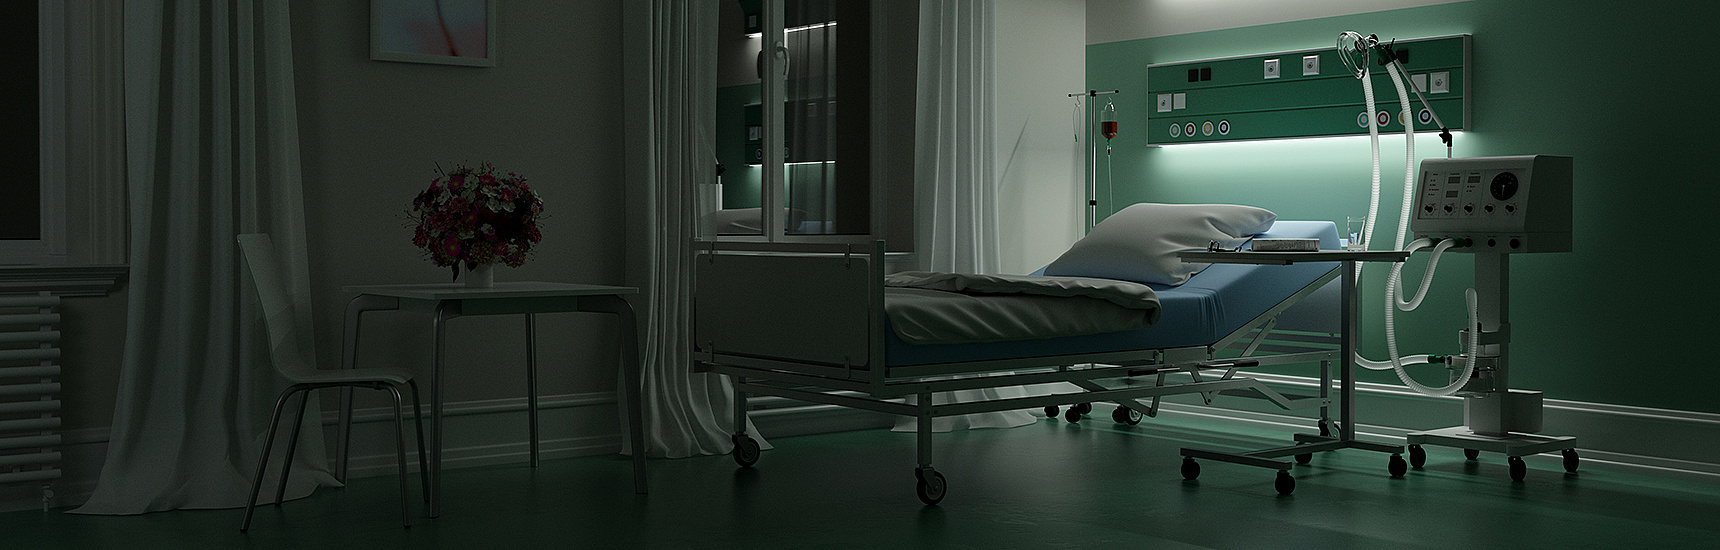 Leeres Krankenbett in dunklem Zimmer